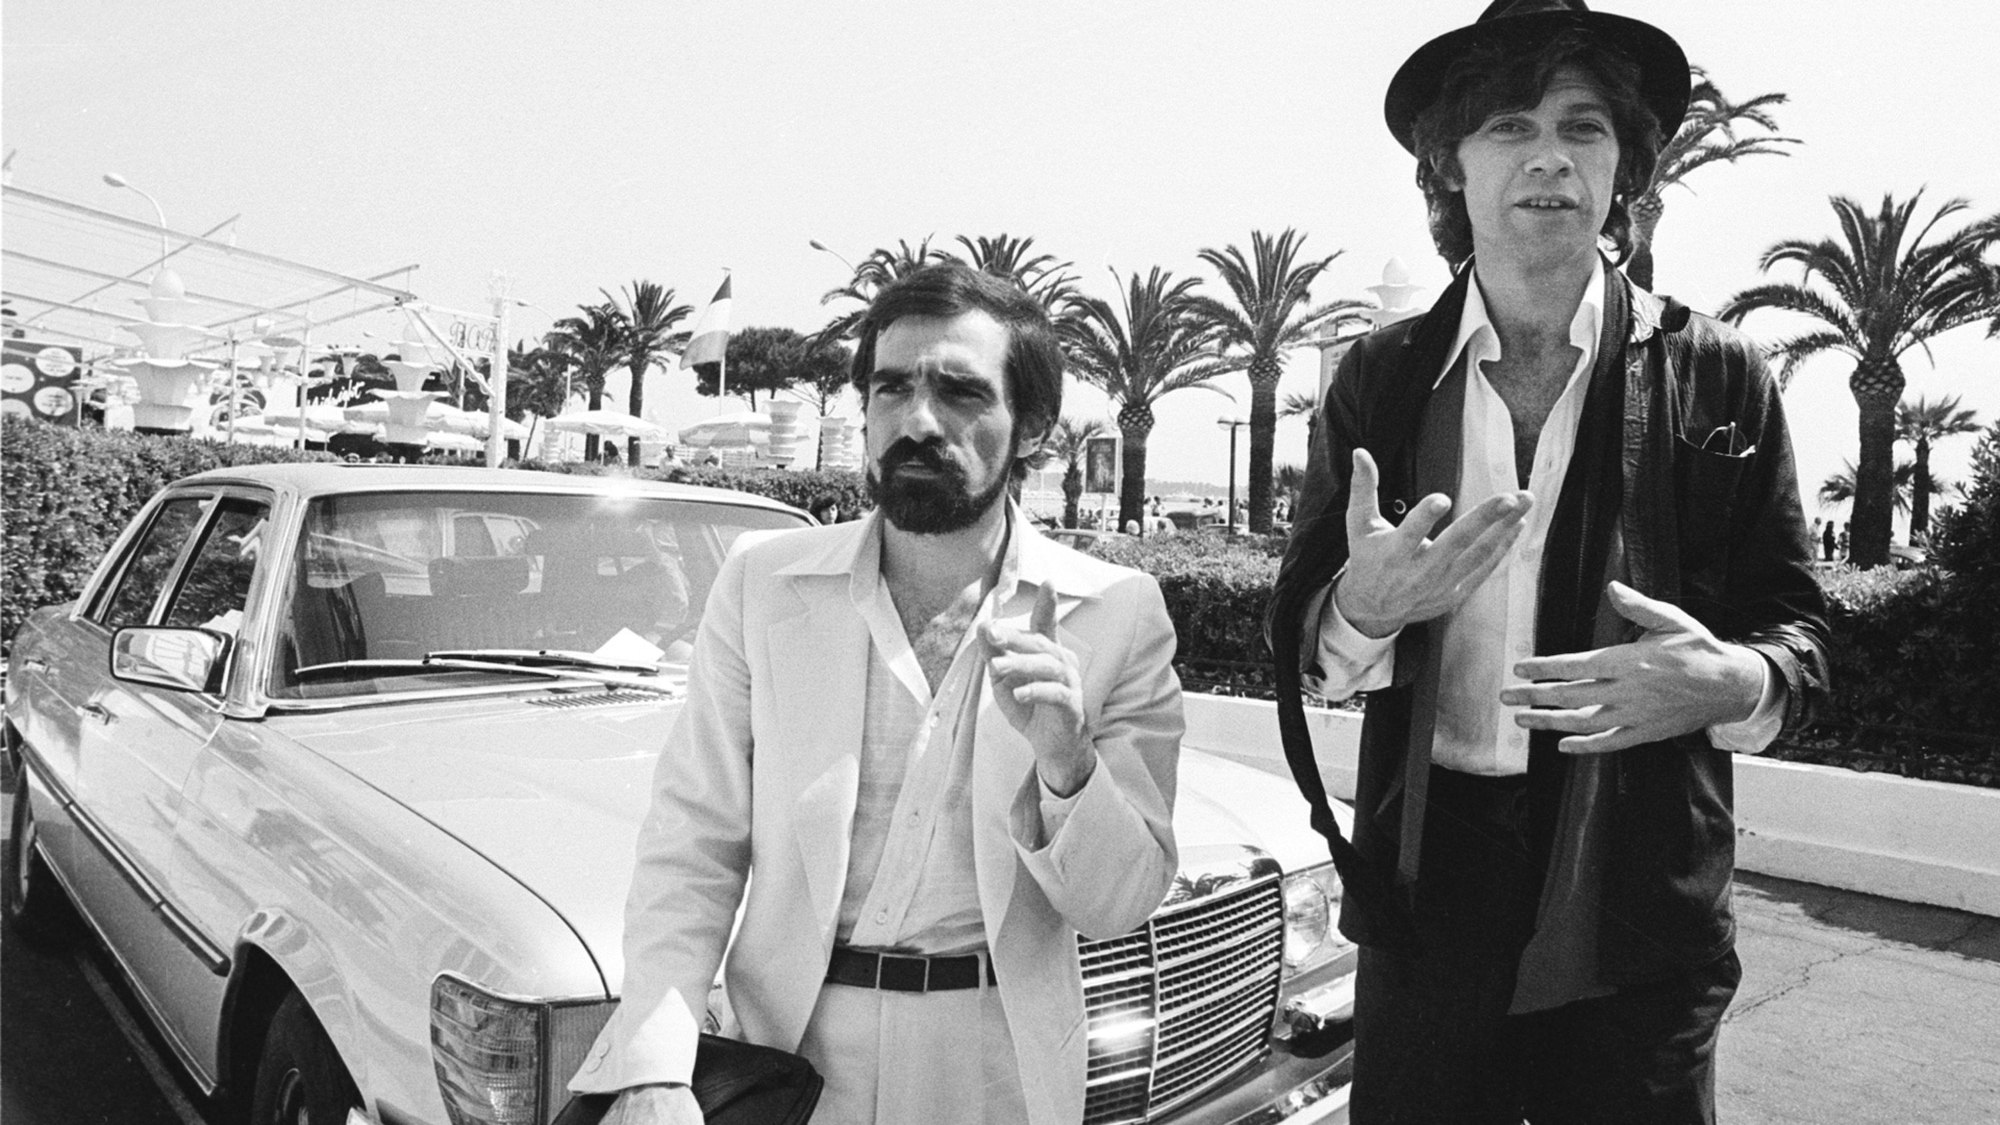 Regisseur Martin Scorsese, links, und Robbie Robertson besuchen die 31. Internationalen Filmfestspiele von Cannes, wo sie am 29. Mai 1978 den Film „Last Waltz“ vorstellen werden. Robertson, der Lead-Gitarrist und Songschreiber von The Band, zu dessen Klassikern „The Weight“, „Up on Cripple Creek“ und „The Night They Drove Old Dixie Down“ gehören, ist im Alter von 80 Jahren gestorben, wie sein Manager mitteilte.